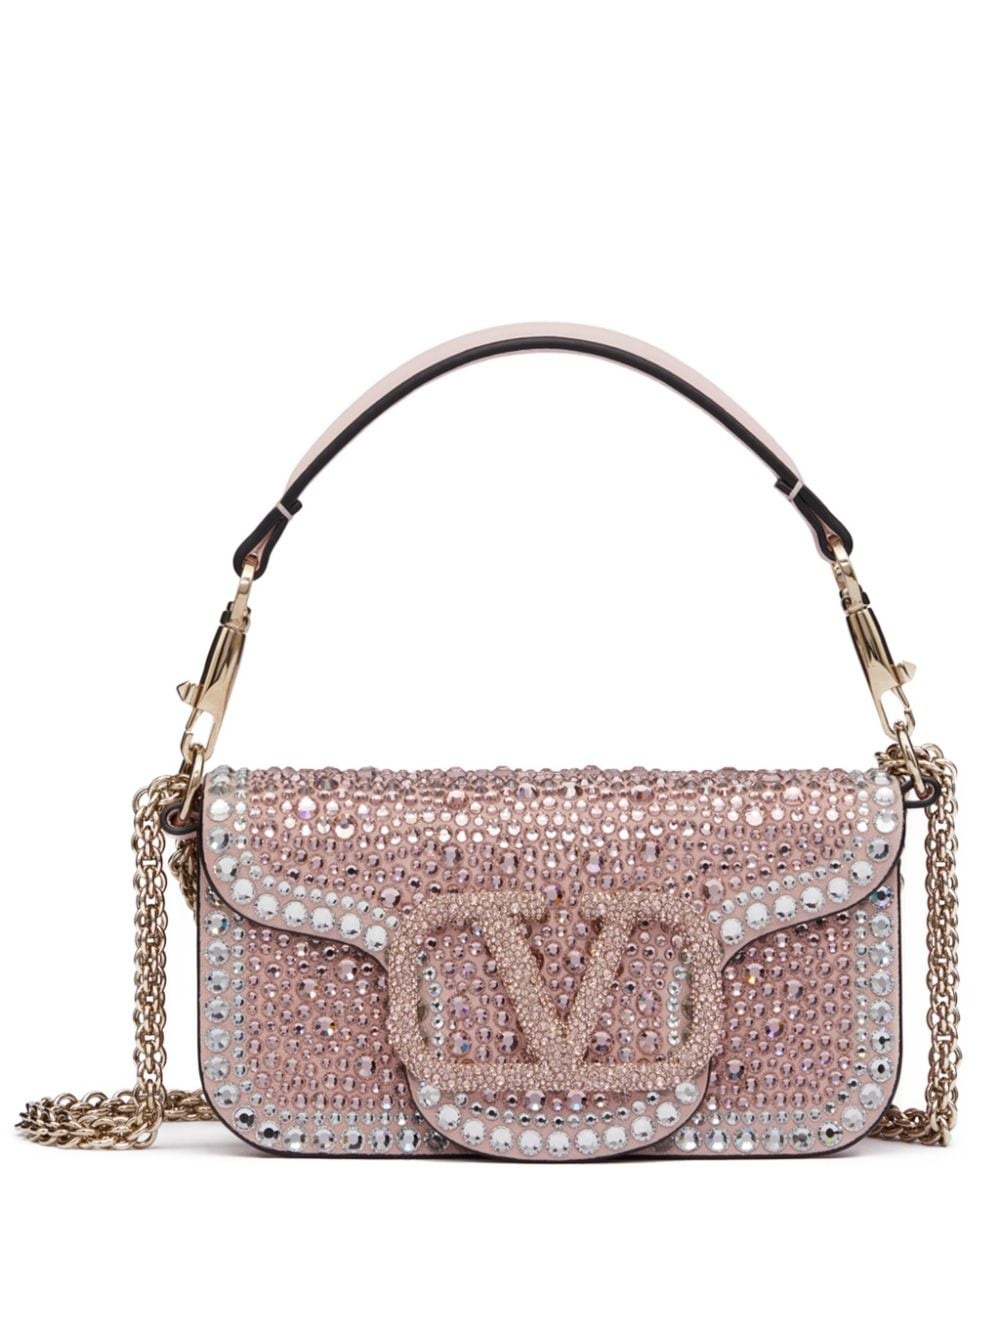 Loco Small Embellished Shoulder Bag in Pink - Valentino Garavani